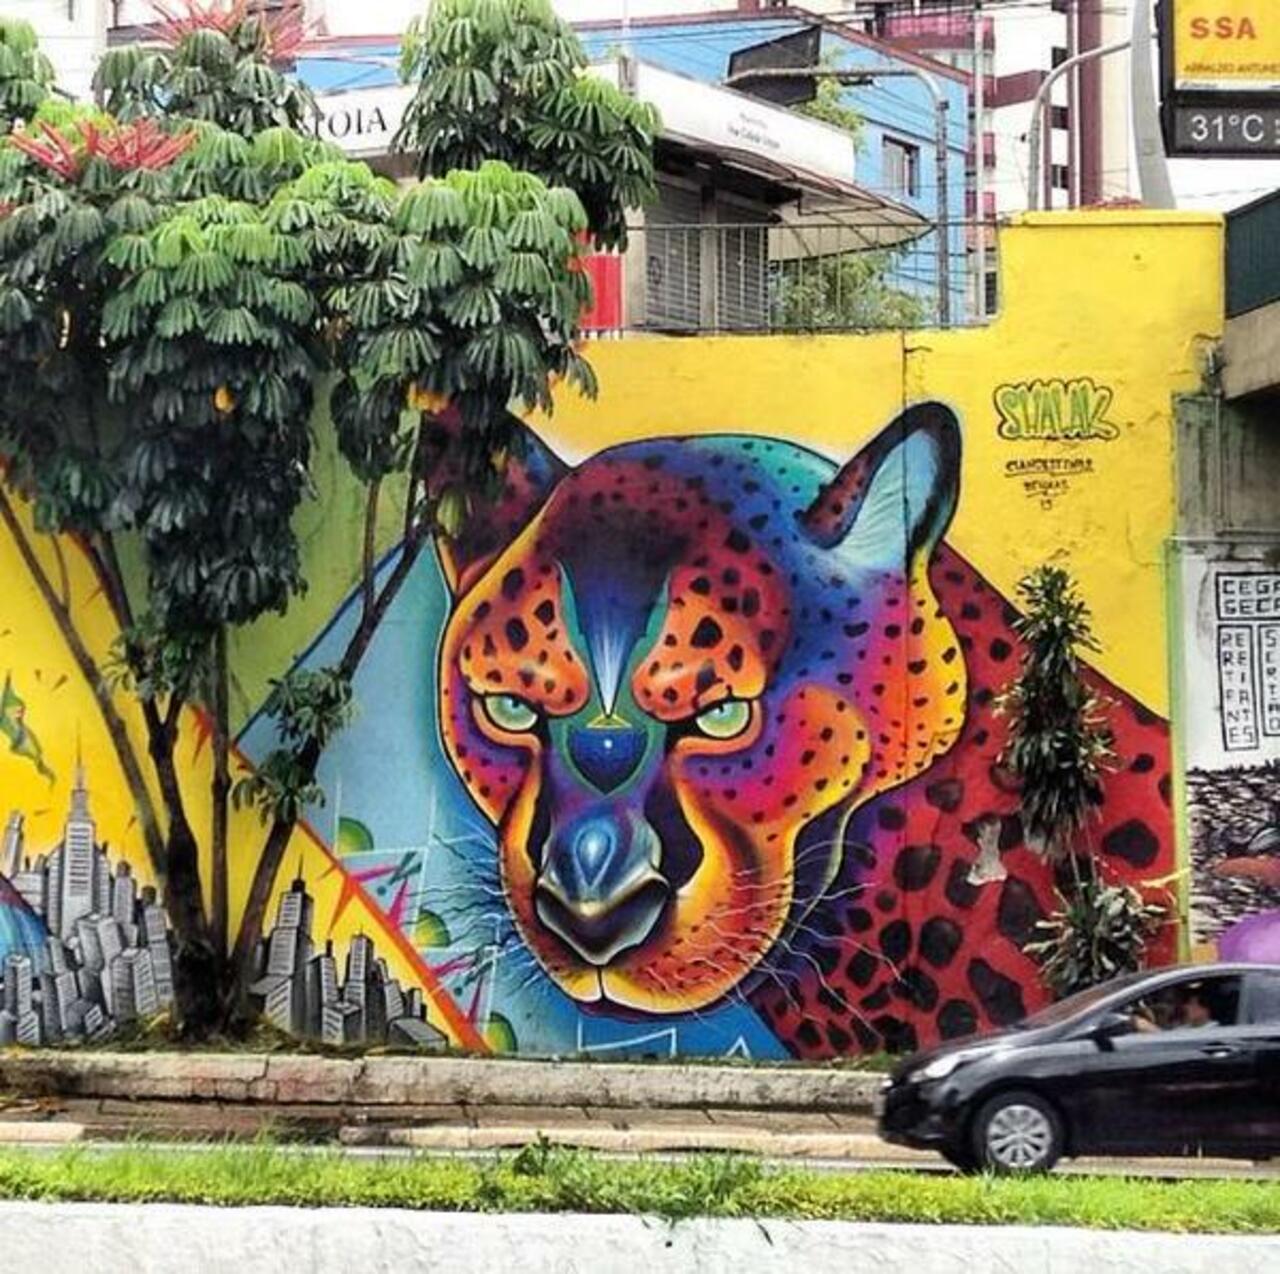 “@Pitchuskita: ShalakAttack 
São Paulo 
#art #graffiti #mural #streetart #urbanart http://t.co/woDjzfraQC”